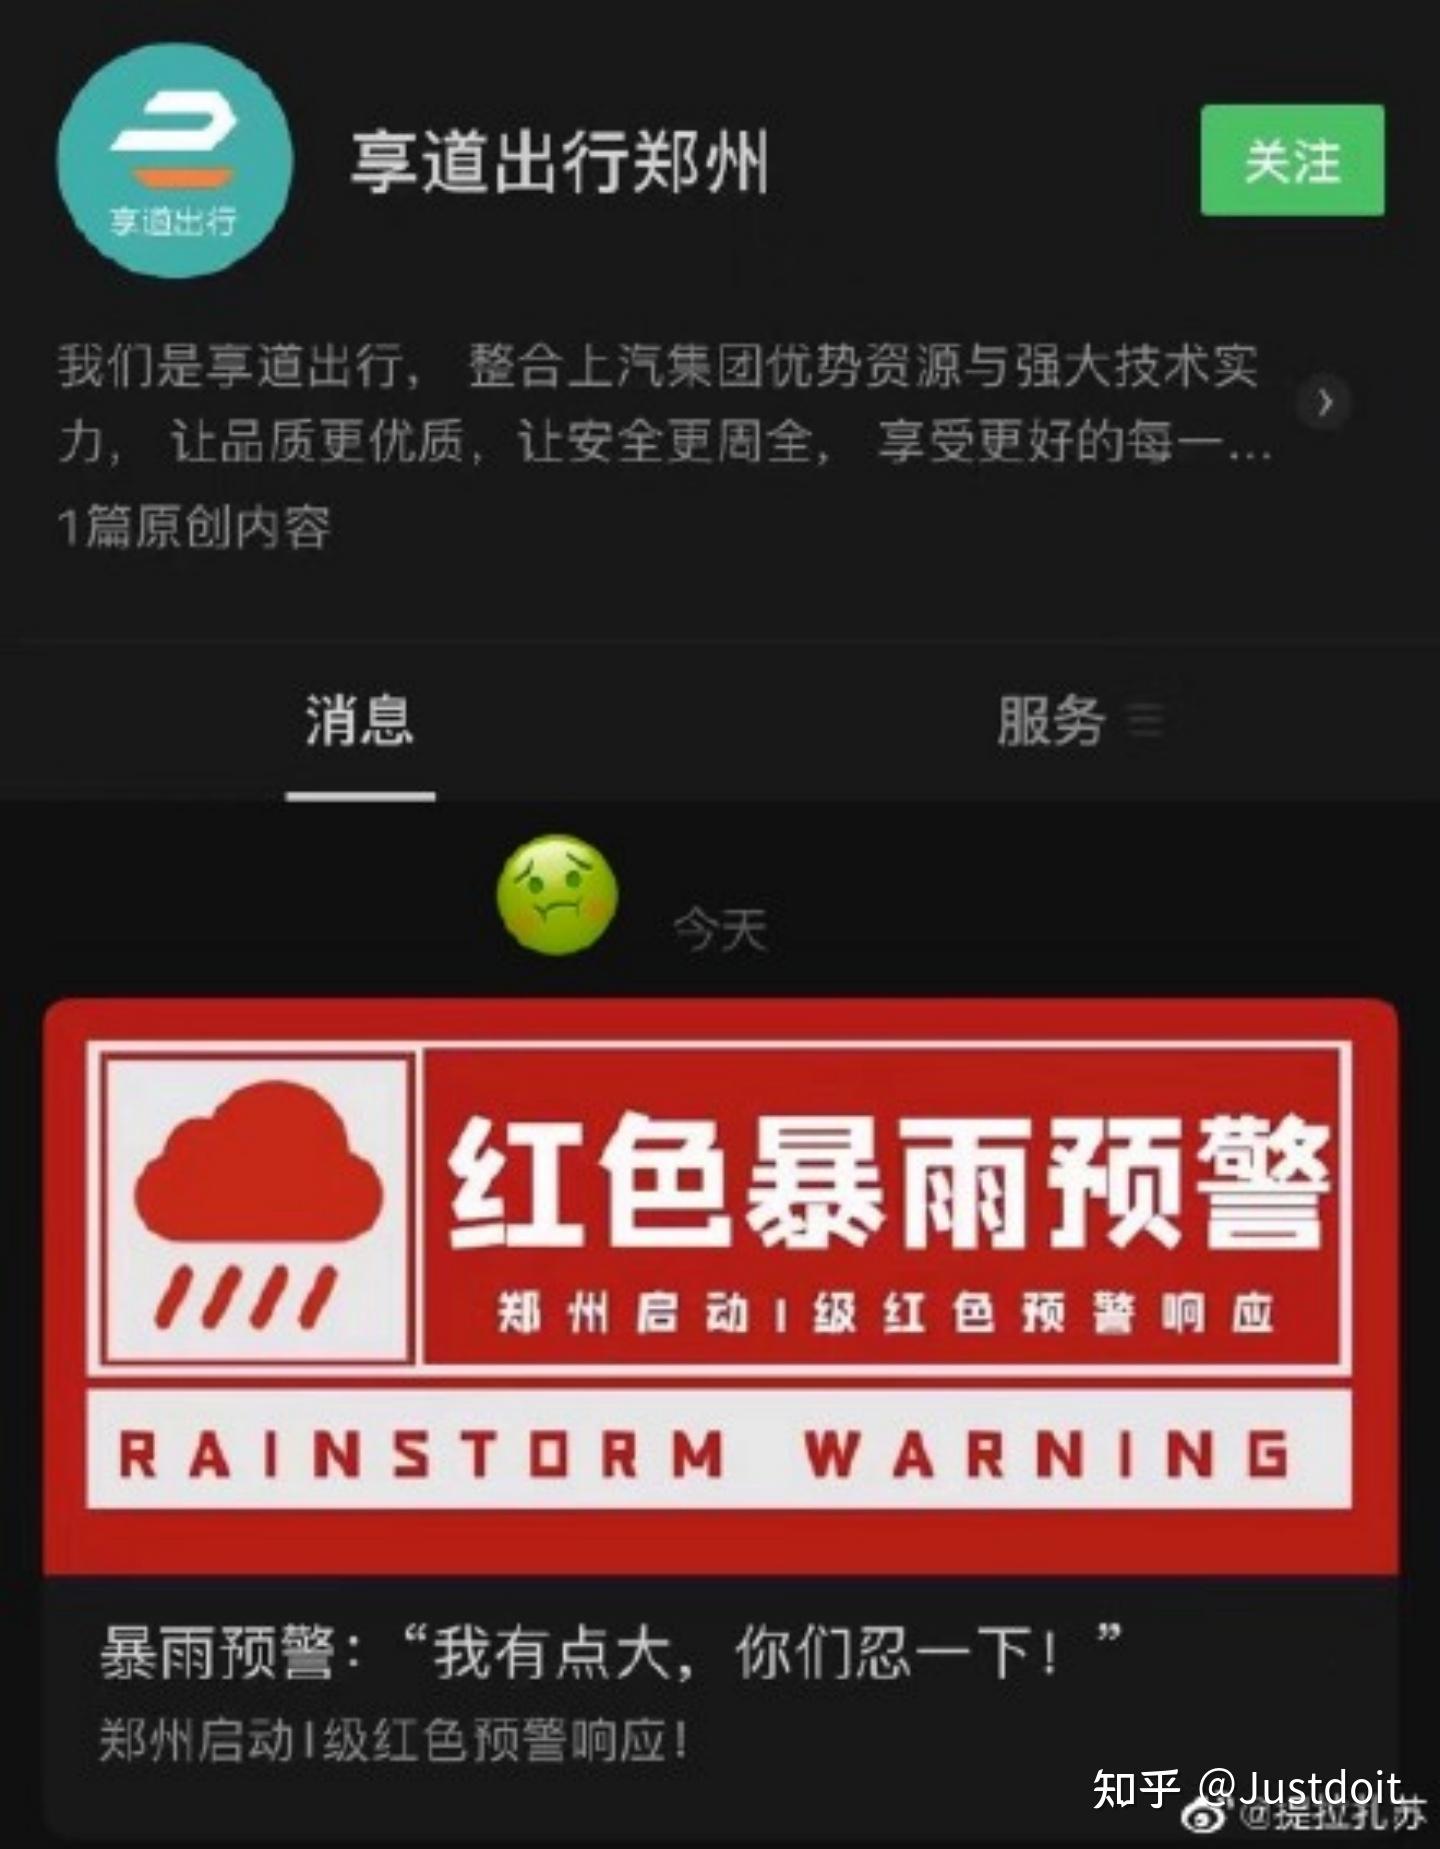 侵删在河南部分地区遭遇特大暴雨之际,郑州某出行公众号发布暴雨预警